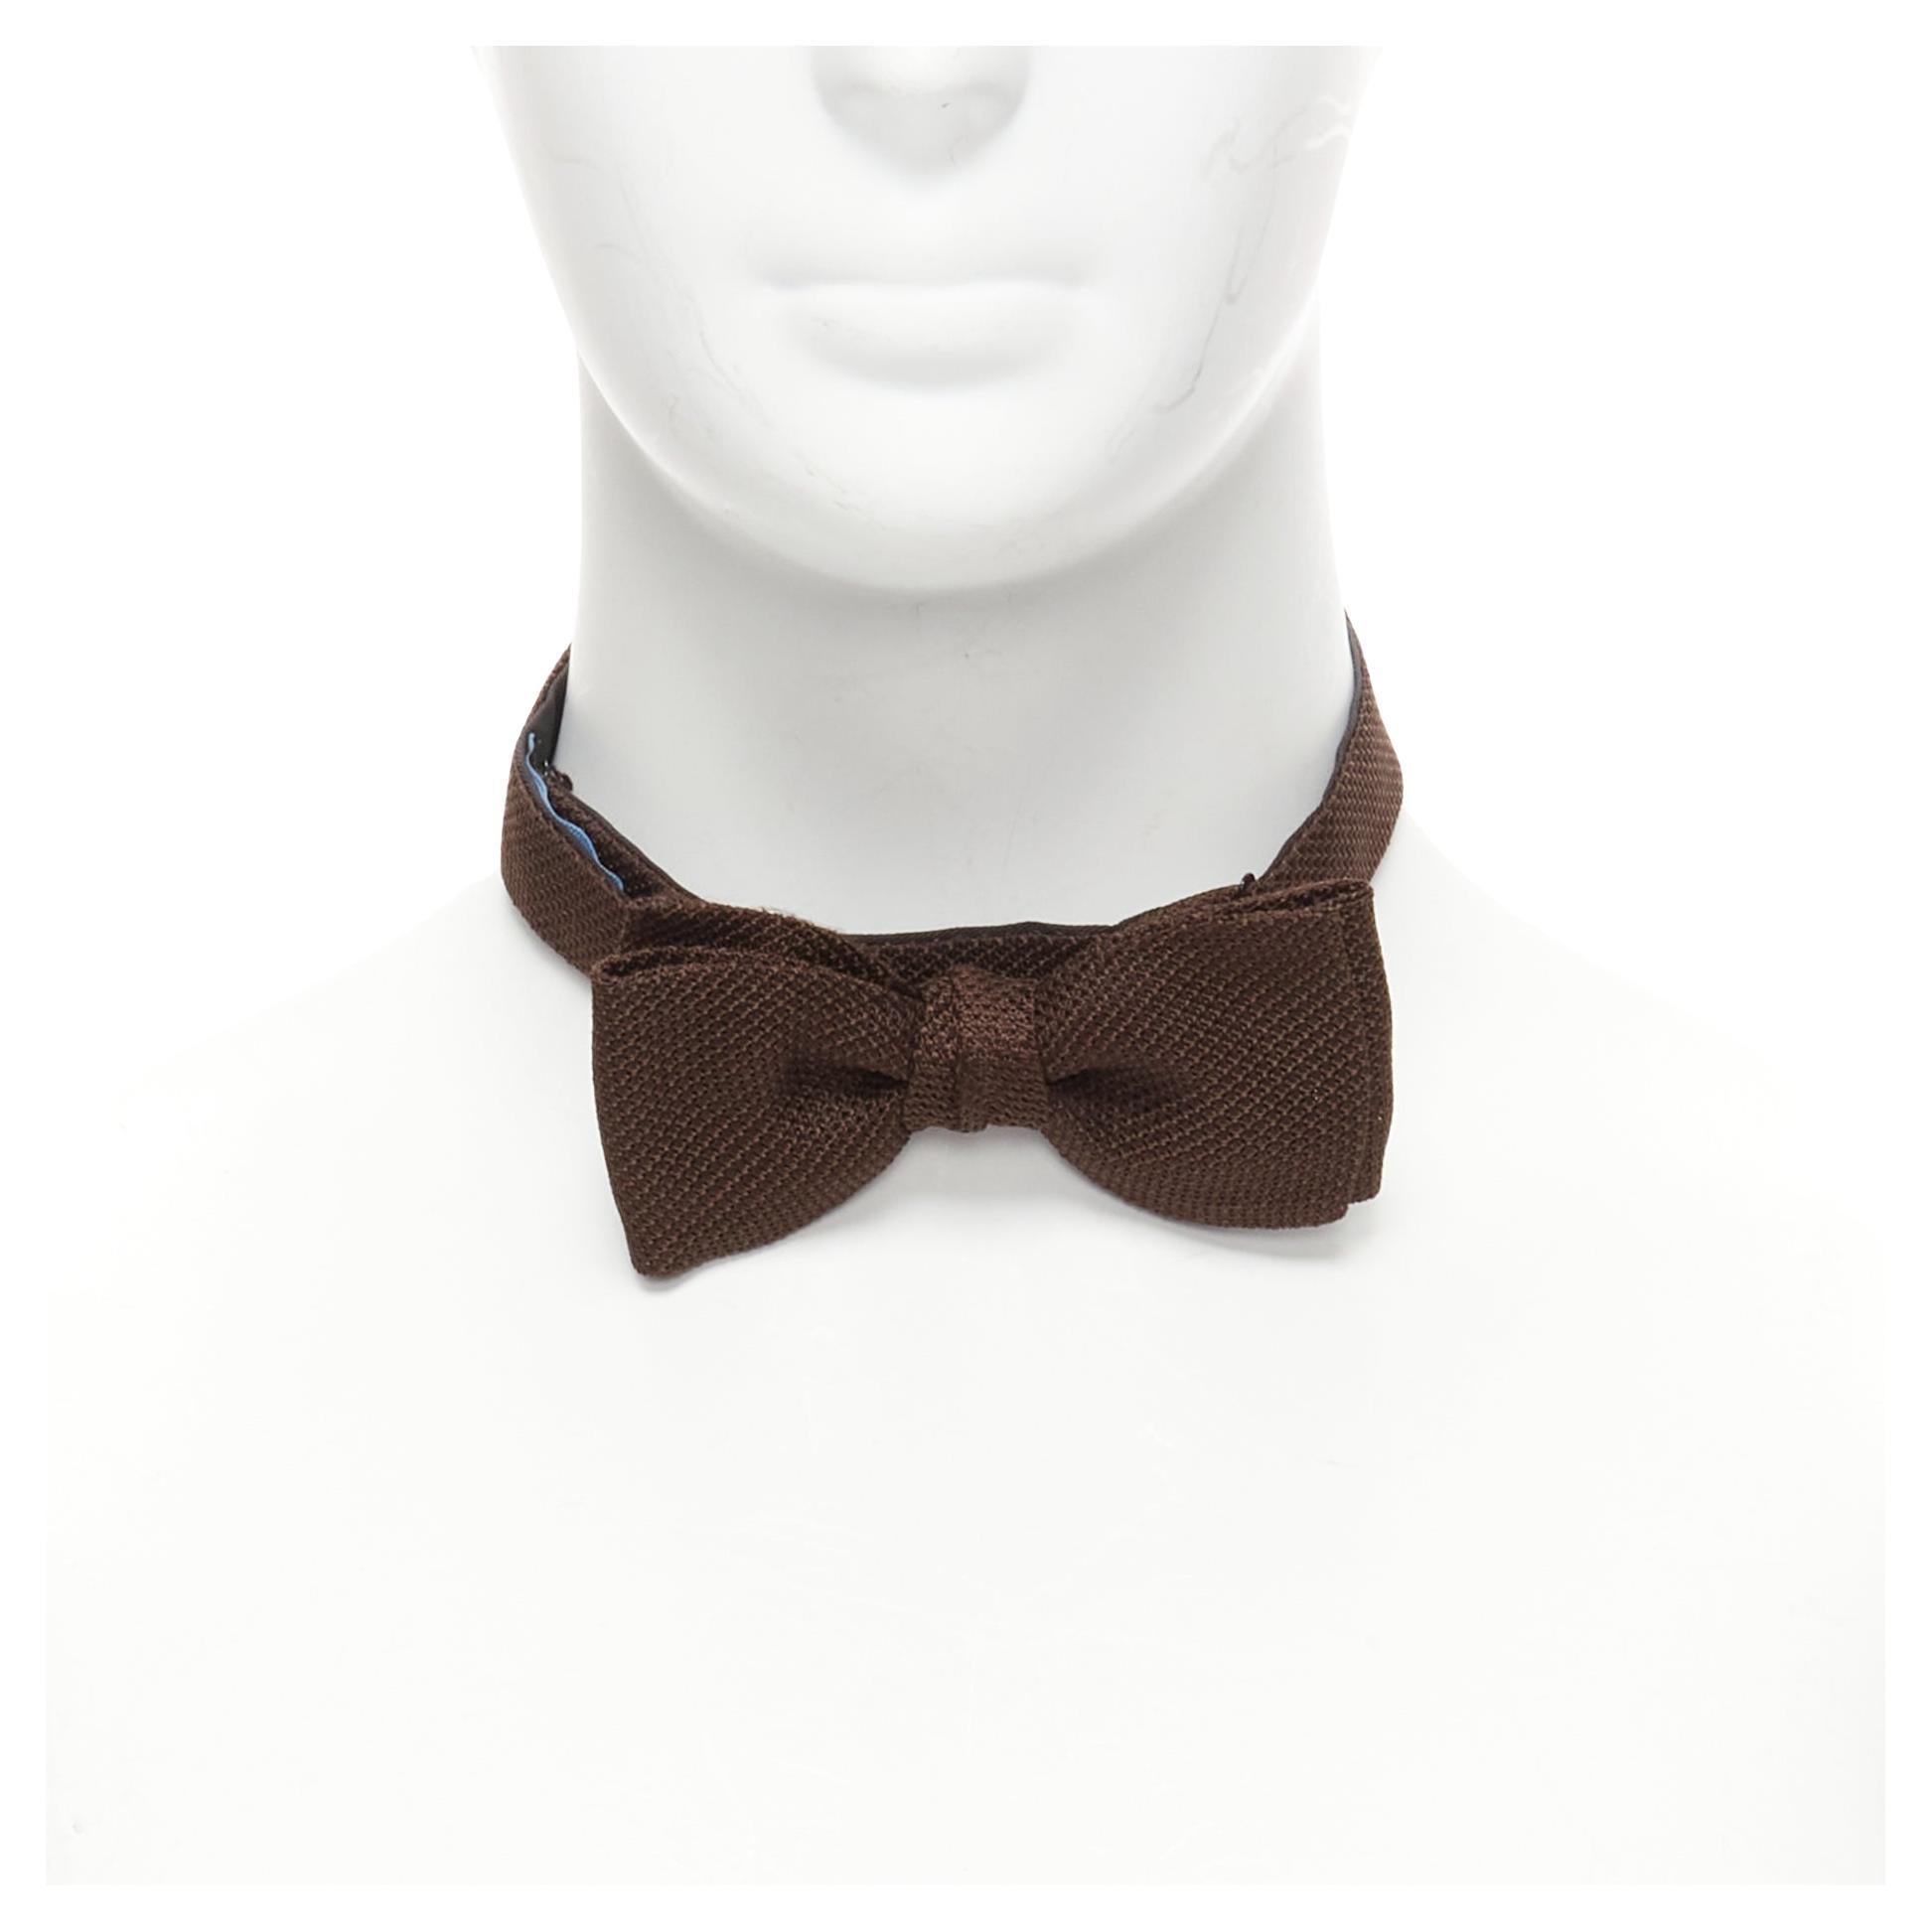 new LANVIN Alber Elbaz Brown textured fabric bow tie Adjustable en vente